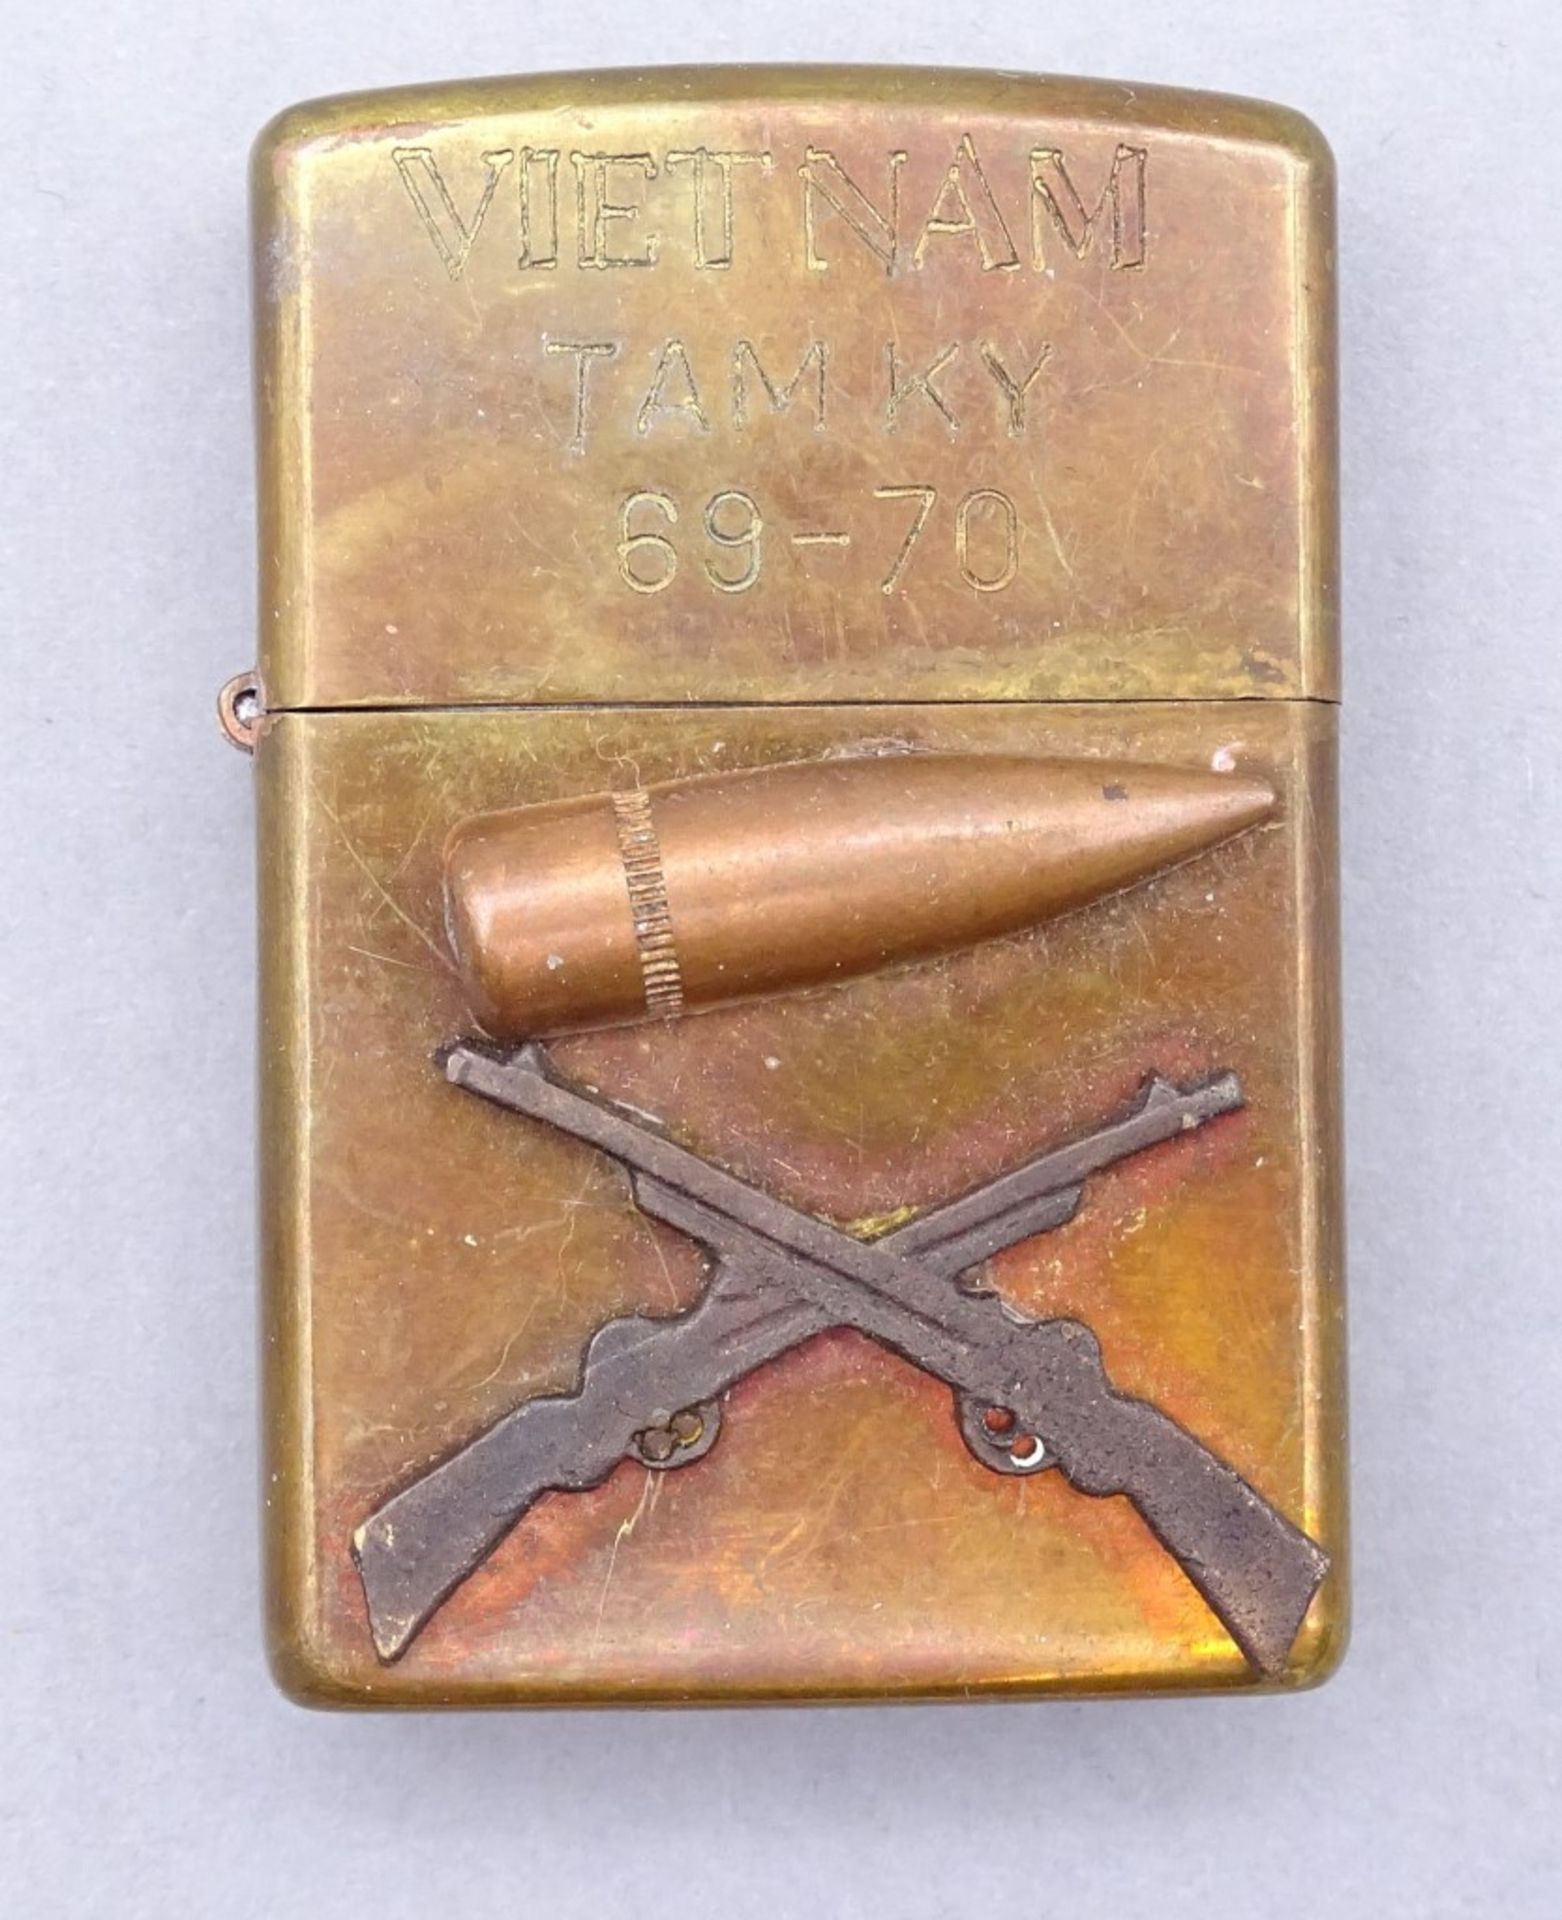 "Zippo" Feuerzeug mit Gravur Vietnam Tamky 69-70",mit aufgelegter Patone und Gewehre""""